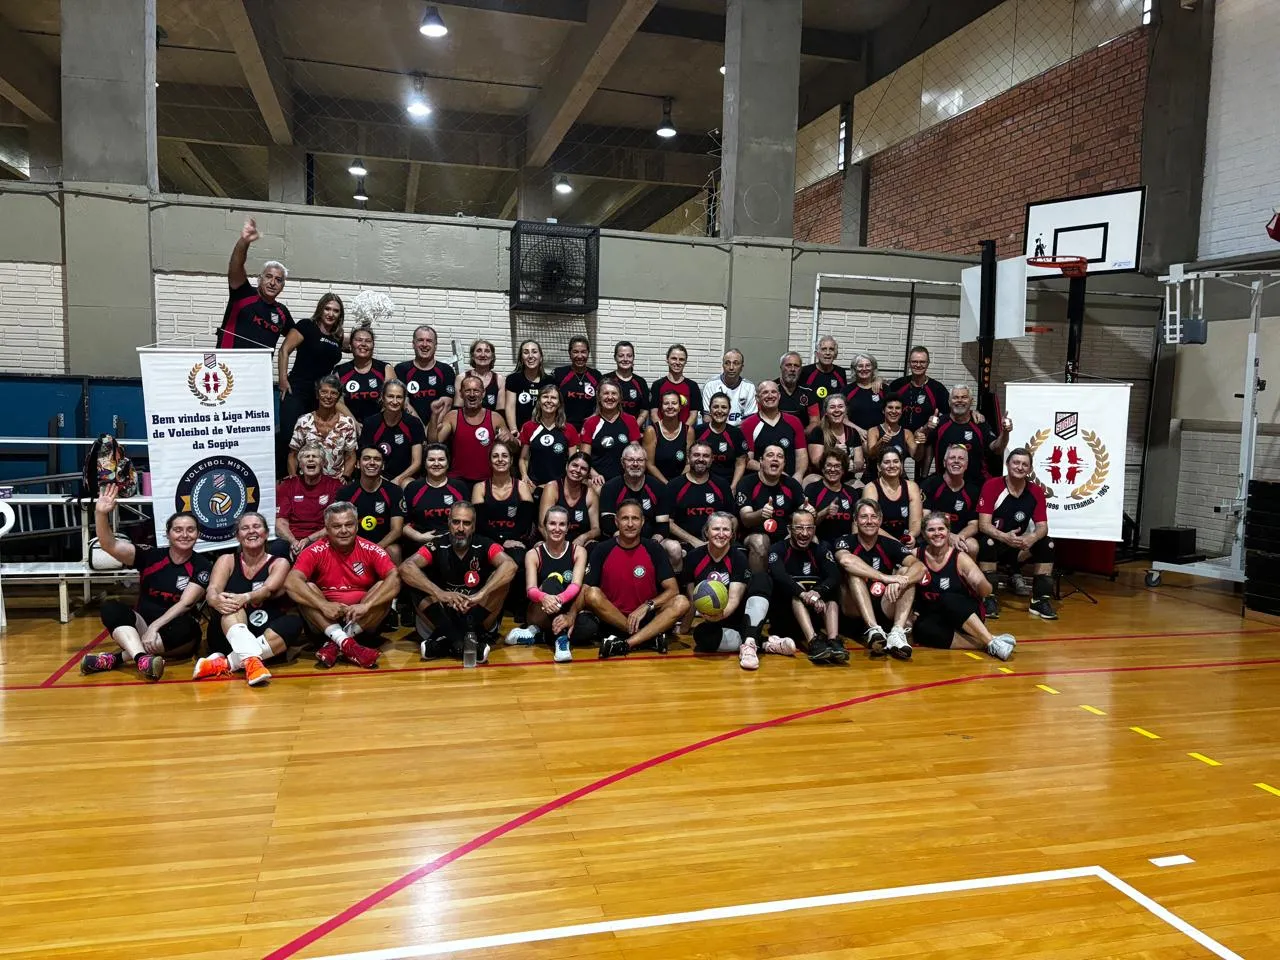 Mais de 40 associados participam da primeira etapa da Liga Mista de Voleibol de Veteranos, realizada no ltimo sbado